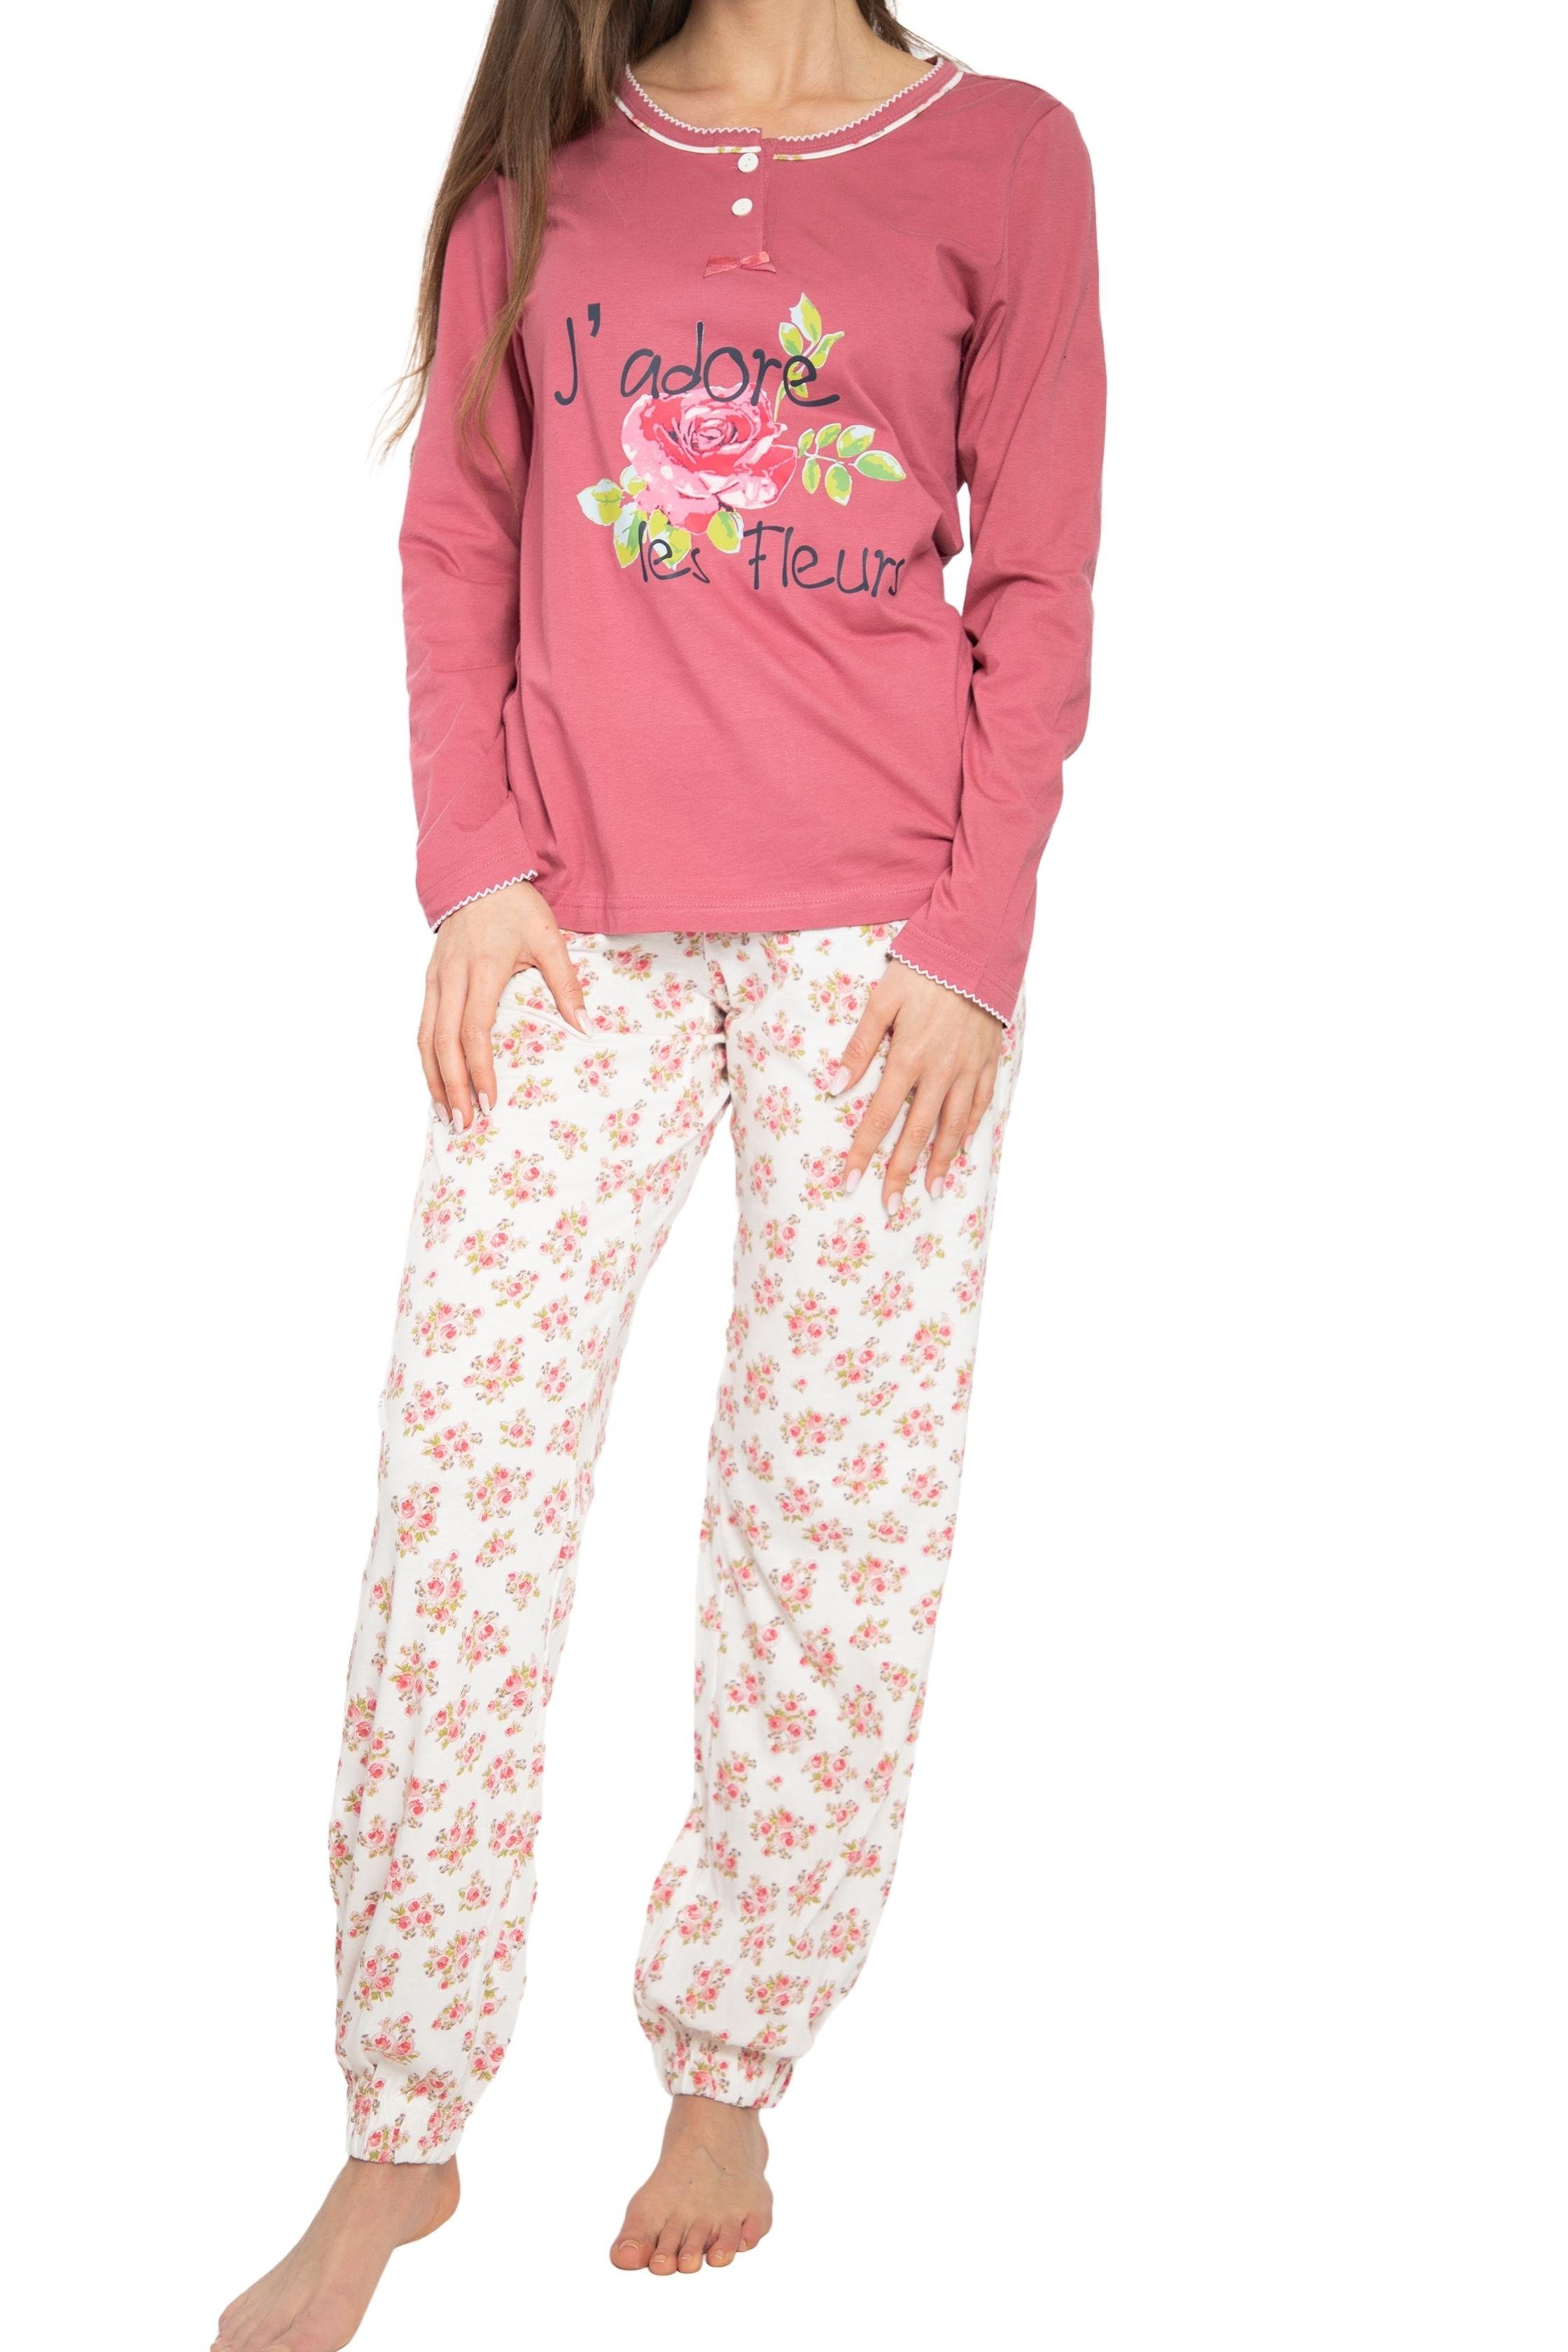 und Pyjama Consult-Tex Damen Schlafanzug Pyjama Ziernähten DW901 Paspelierungen (Spar-Set) mit